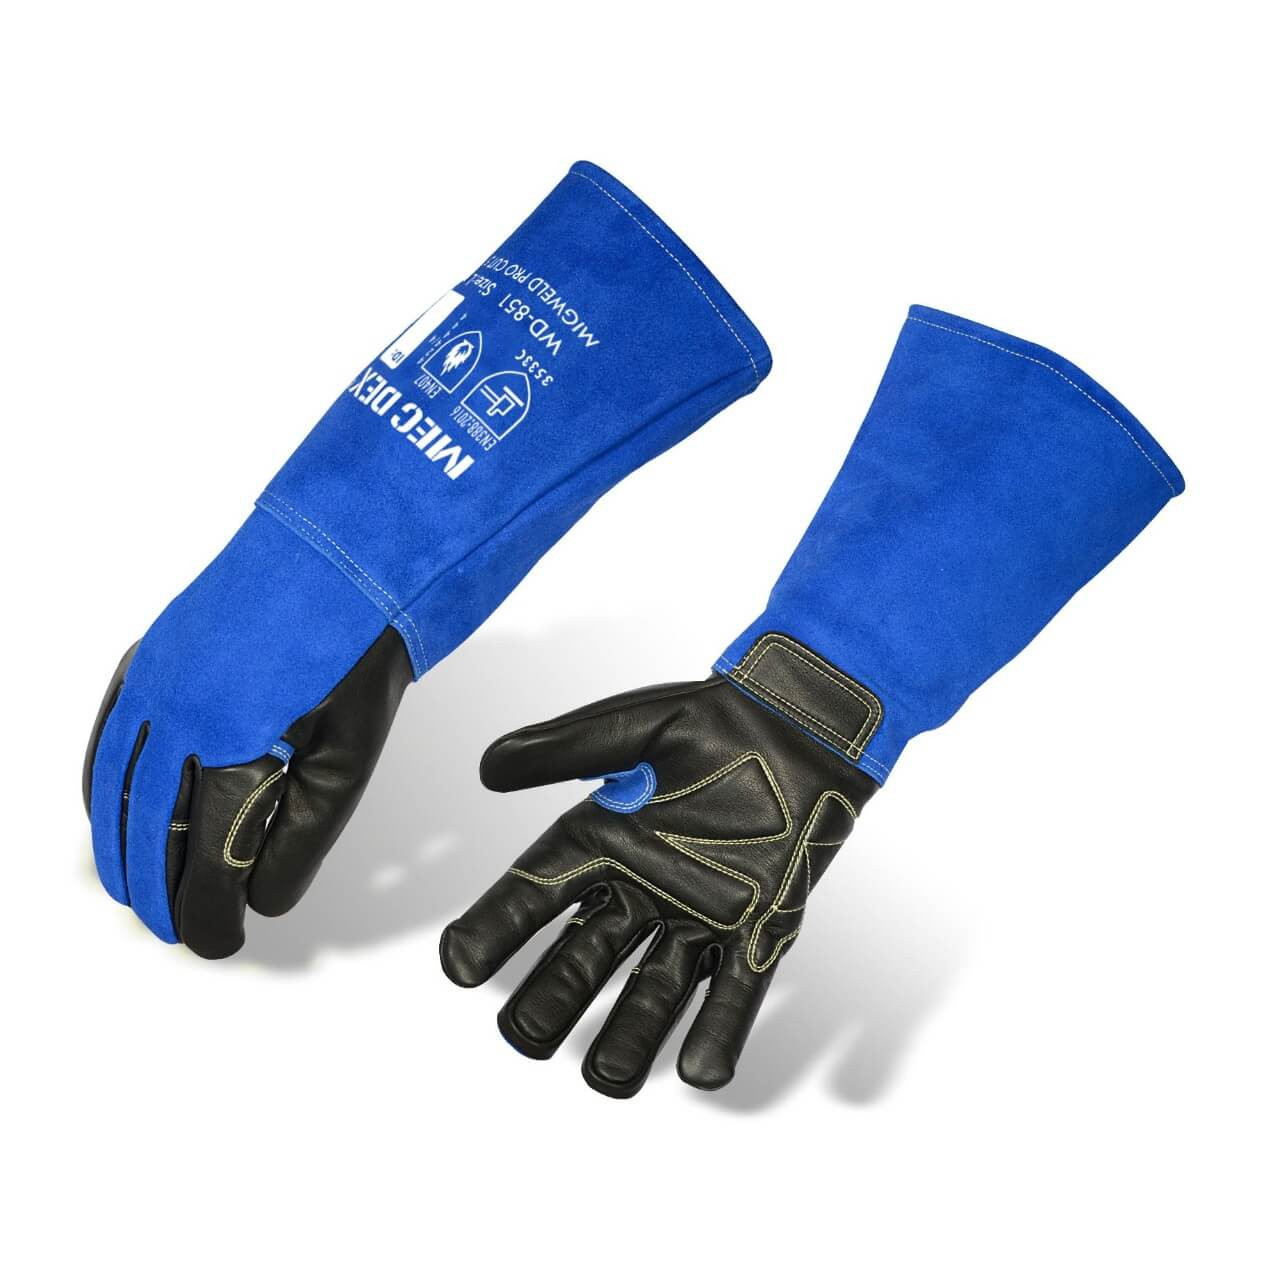 Mec Dex Migweld Pro Cut 5 Mig Glove